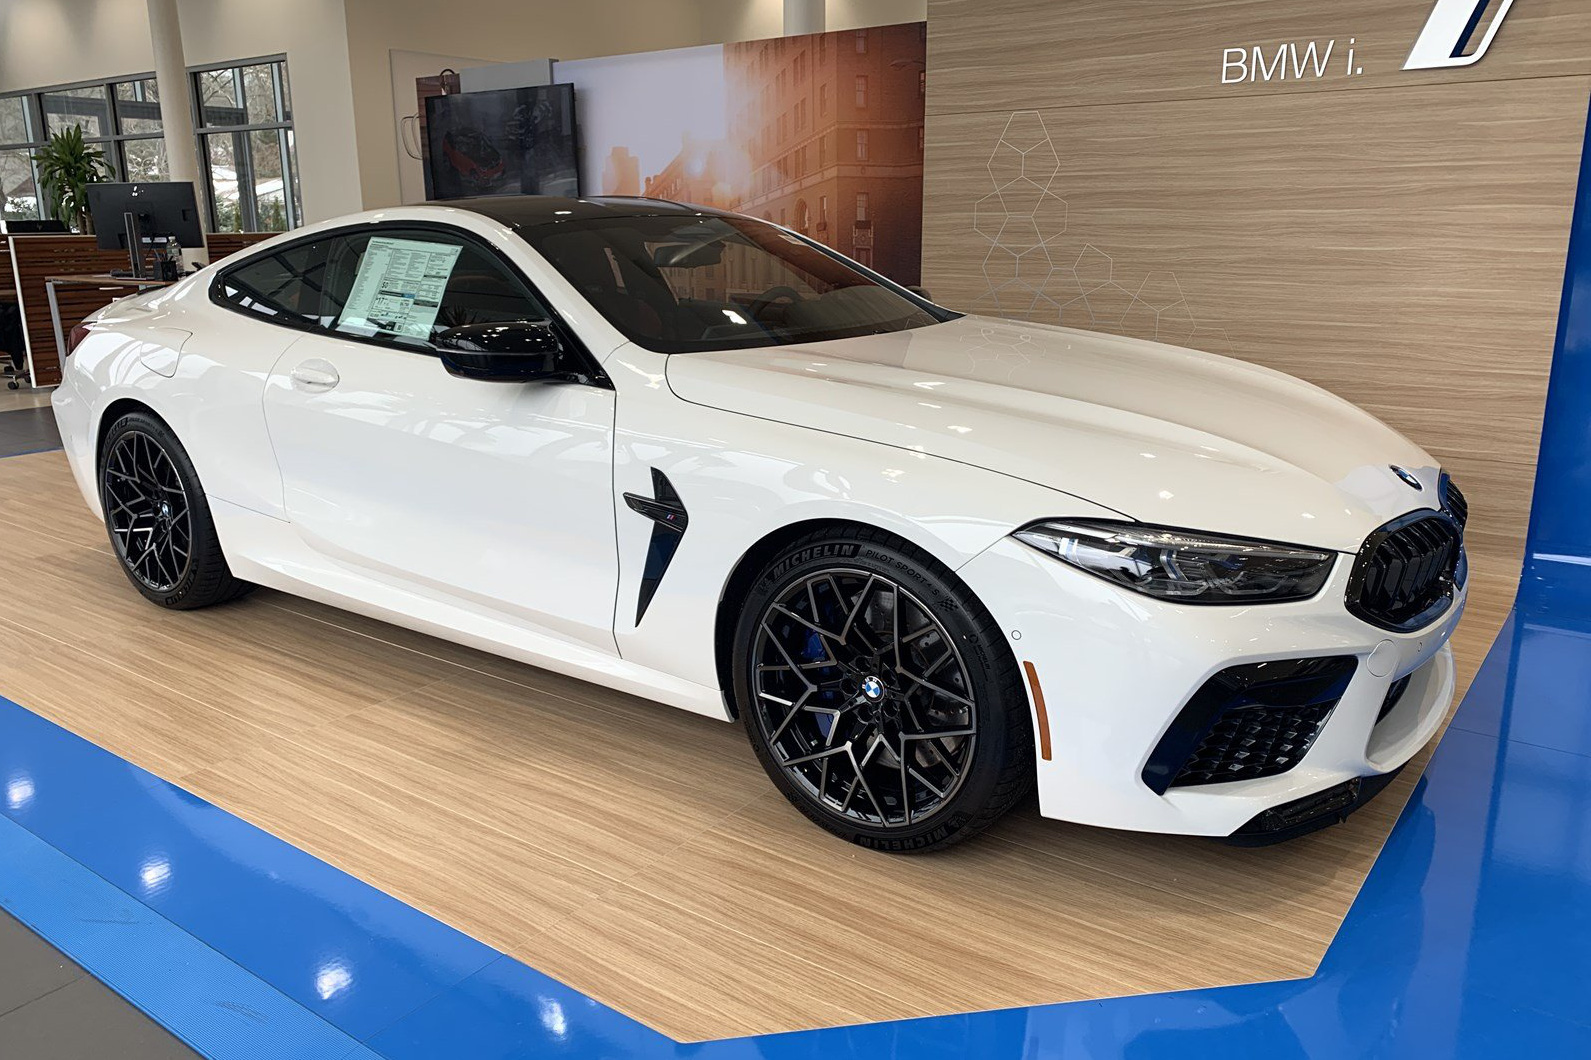 Đấu Mercedes-AMG GT-R, BMW M8 Competition Coupe có giá gần 13 tỷ đồng tại Việt Nam